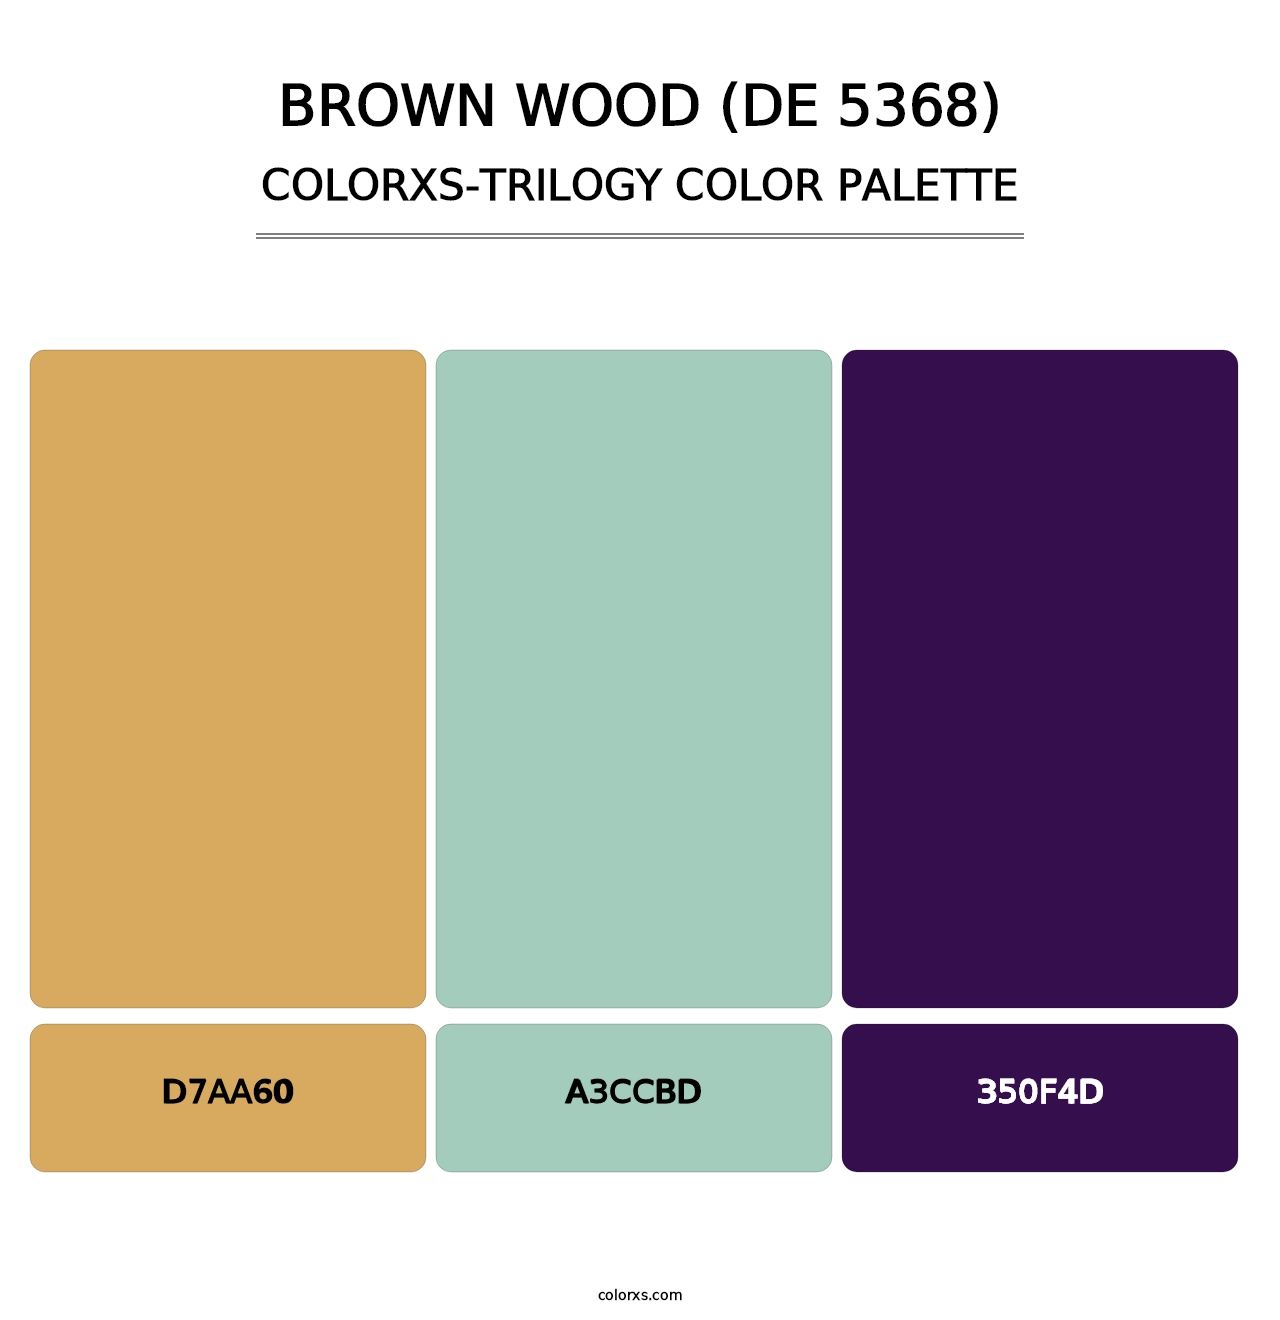 Brown Wood (DE 5368) - Colorxs Trilogy Palette